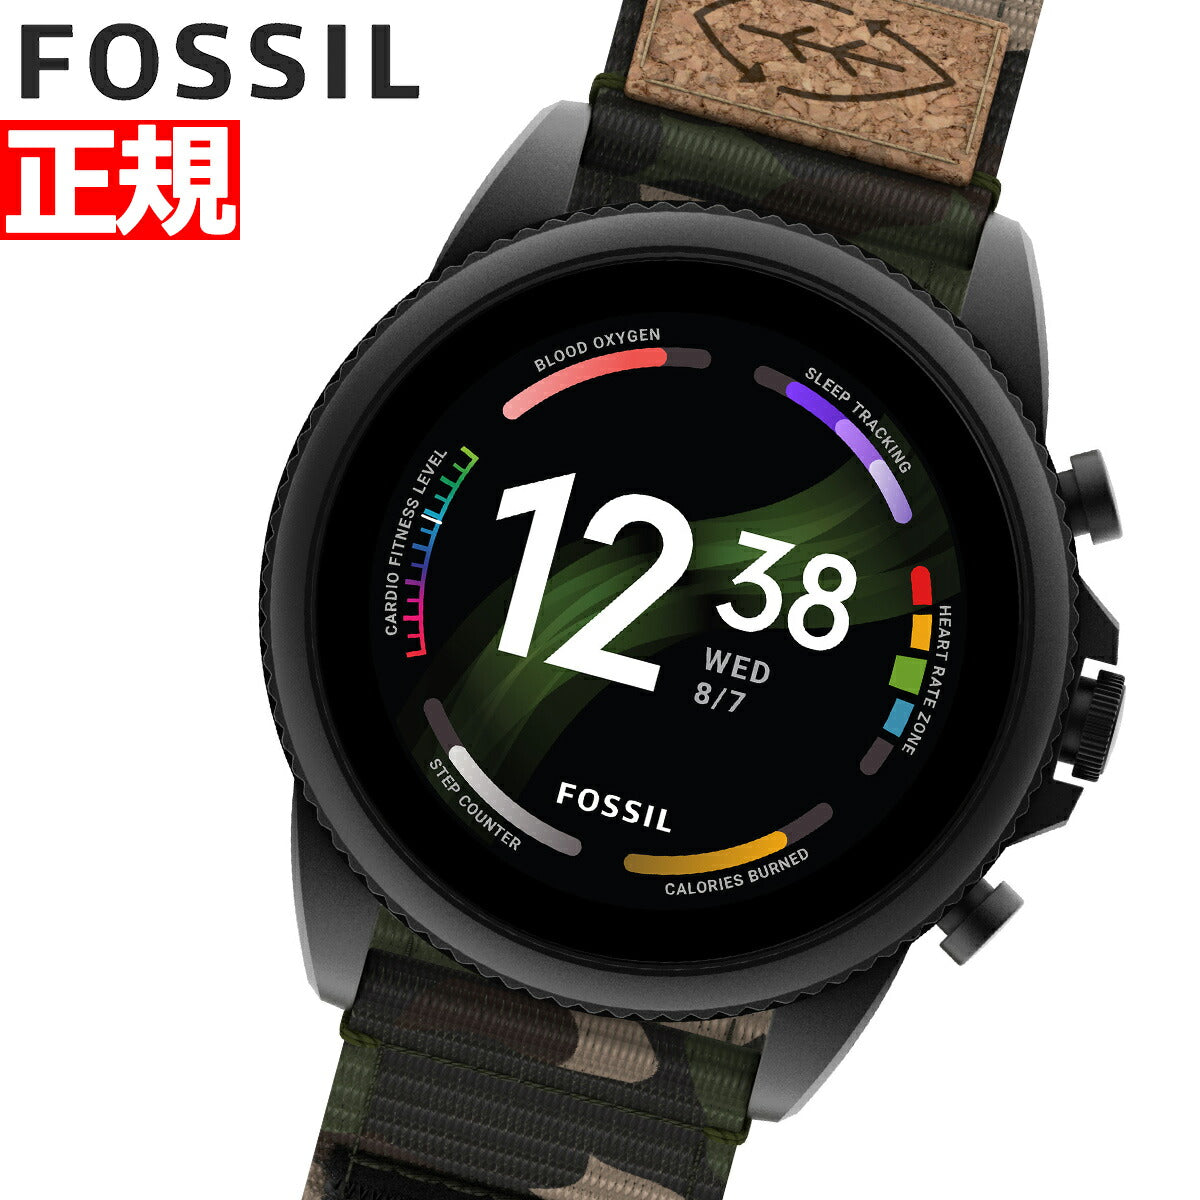 フォッシル FOSSIL スマートウォッチ 腕時計 メンズ ジェネレーション6 Generation 6 ウェアラブル GEN6 タッチスクリーン FTW4063